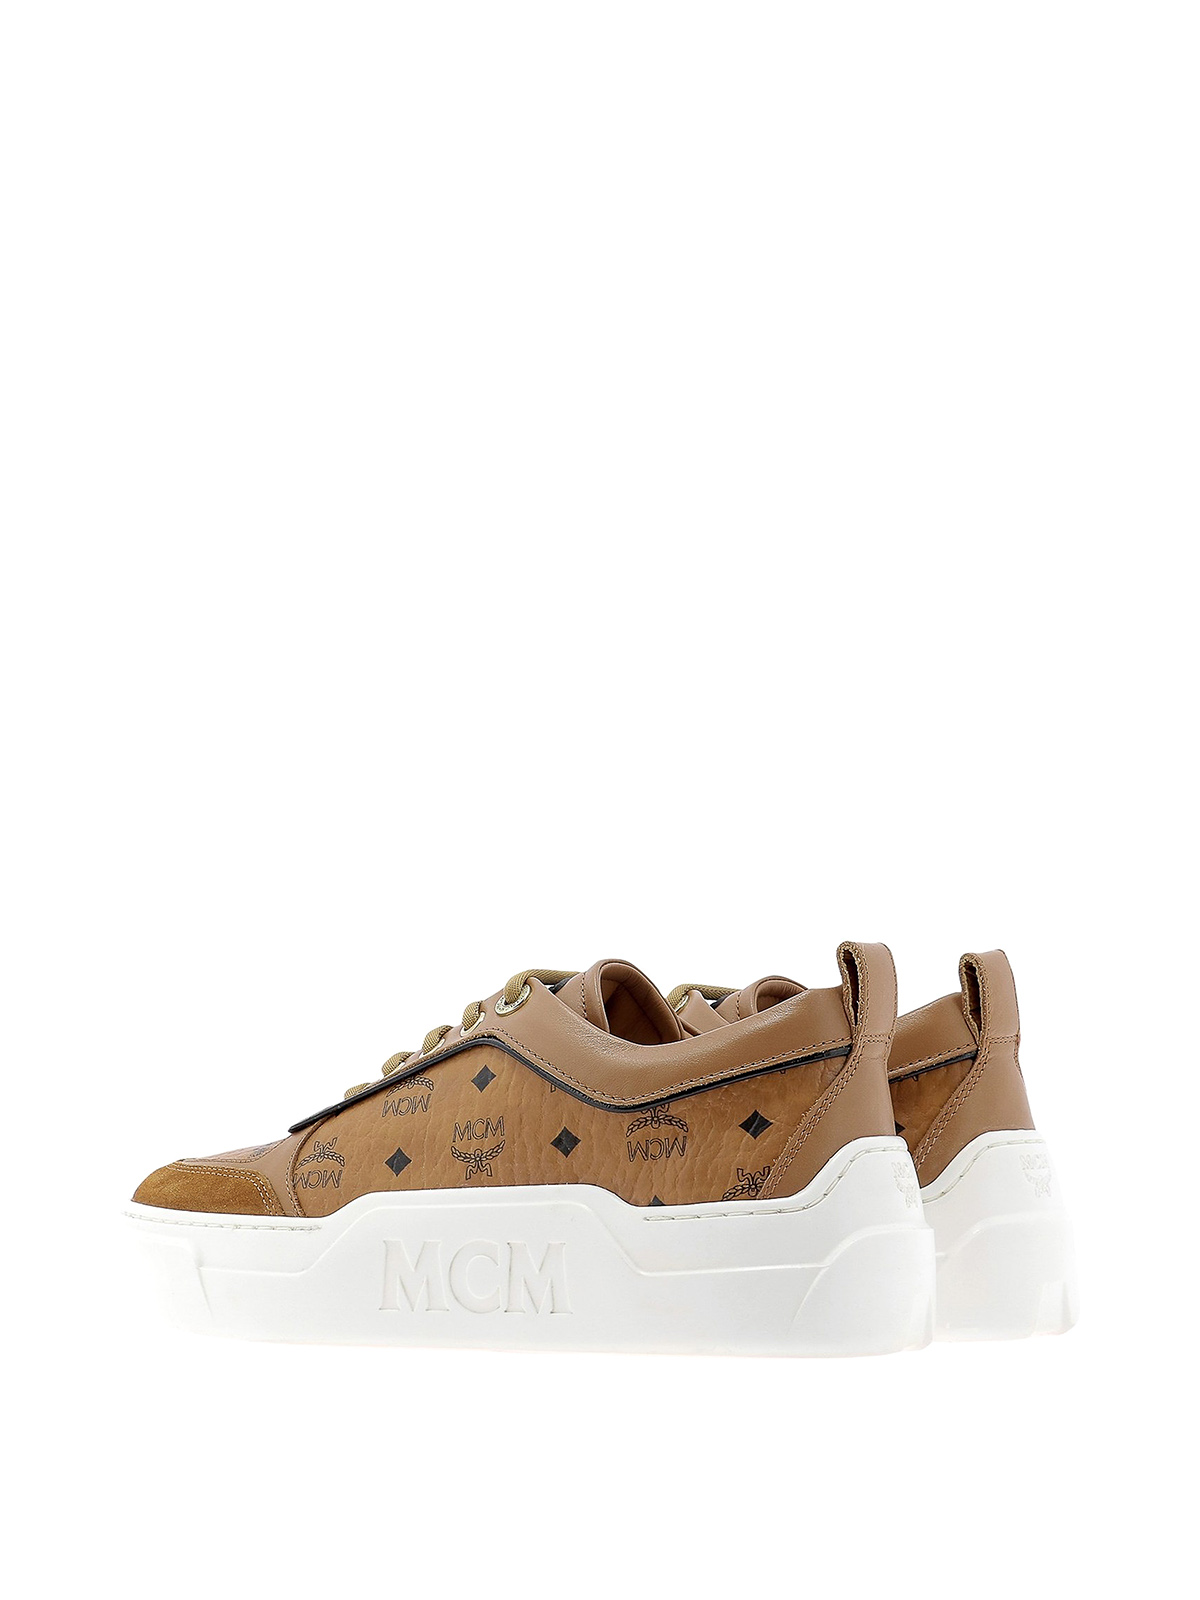 mcm sneakers